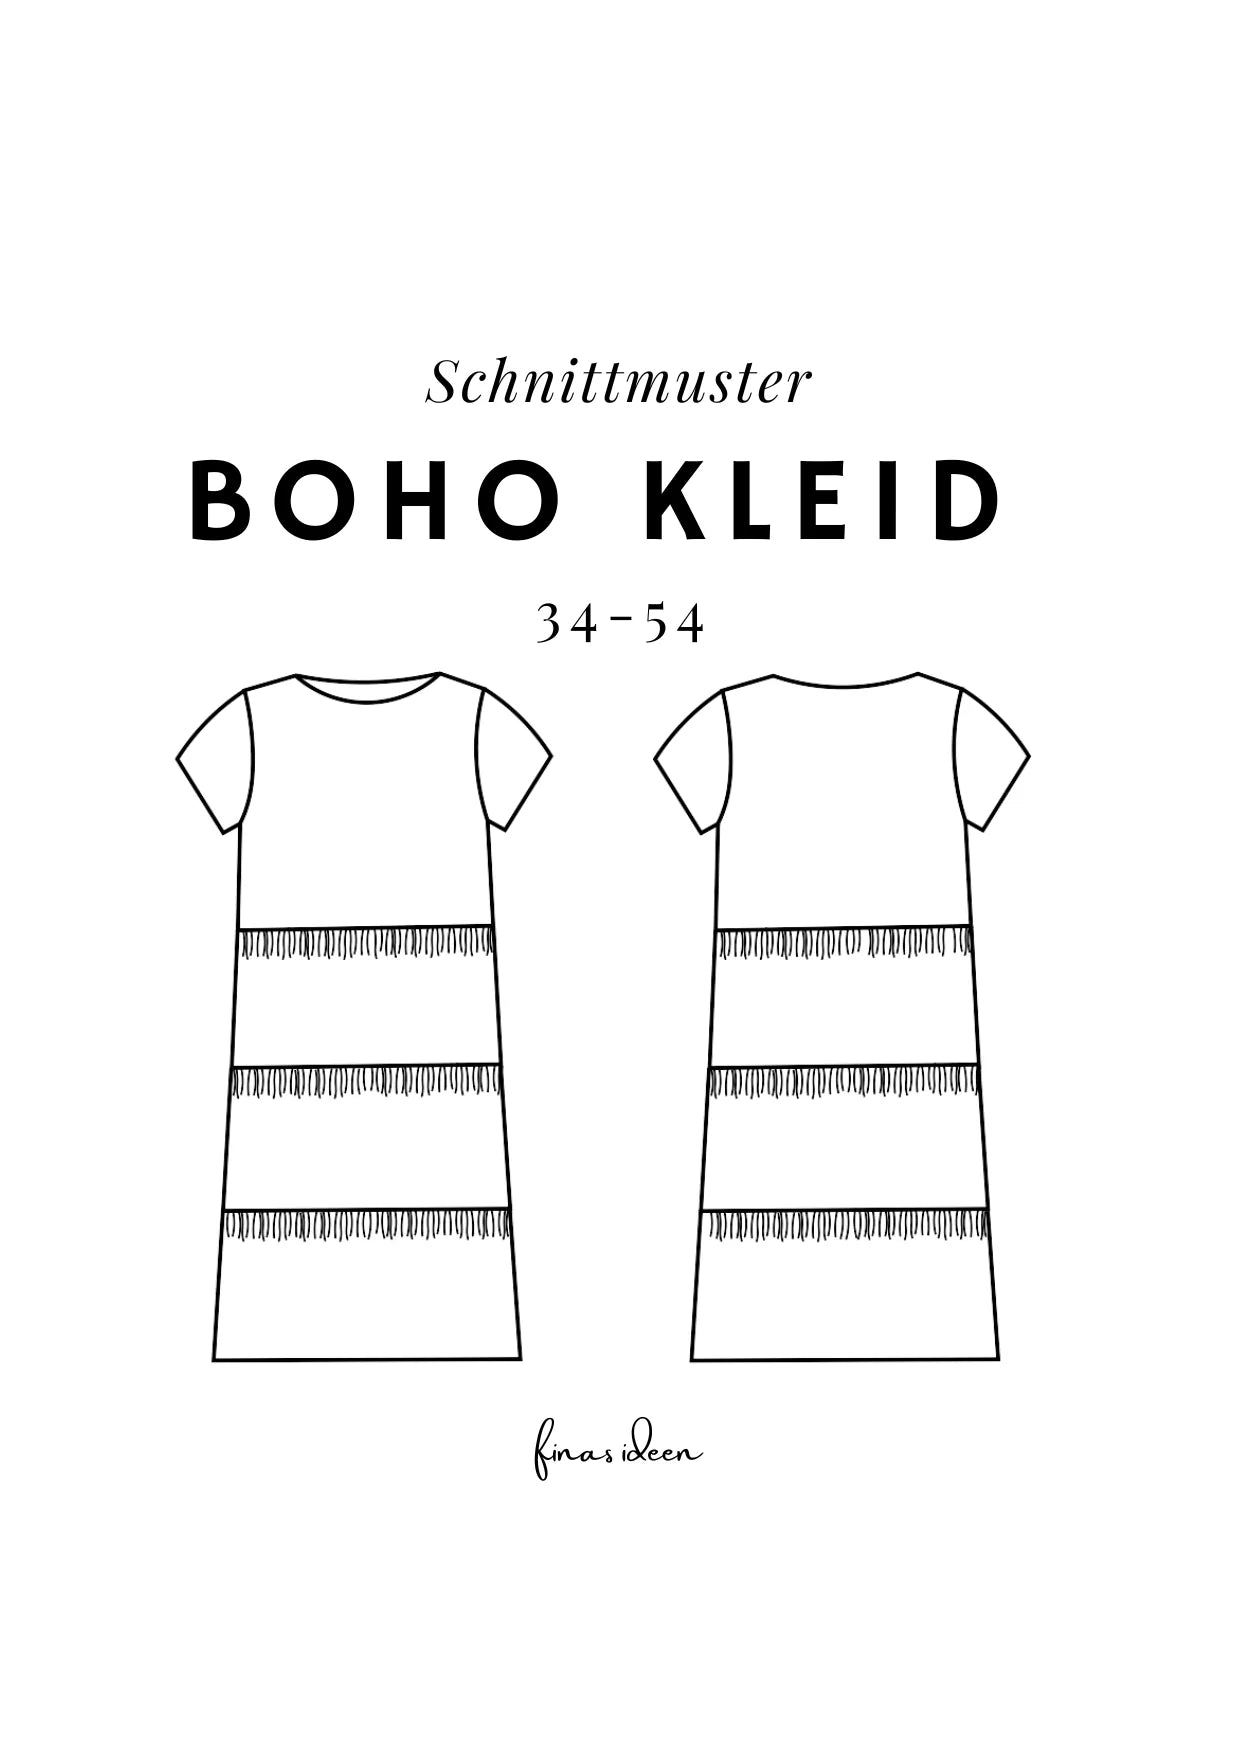 Basic Boho Kleid (Papierschnittmuster) - FinasIdeen